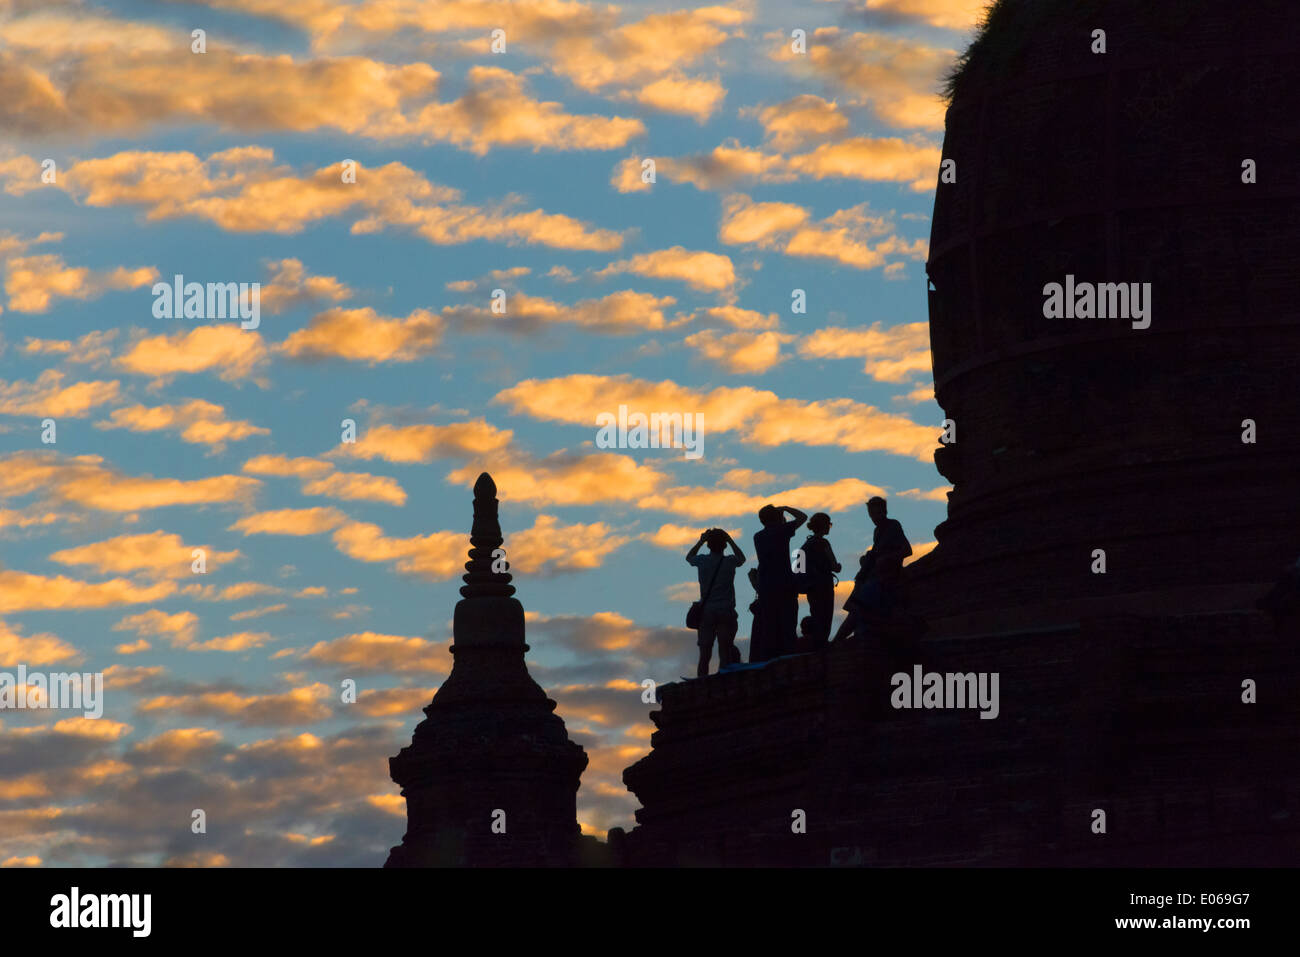 Silhouette d'anciens temples et pagodes au coucher du soleil, Bagan, Myanmar Banque D'Images